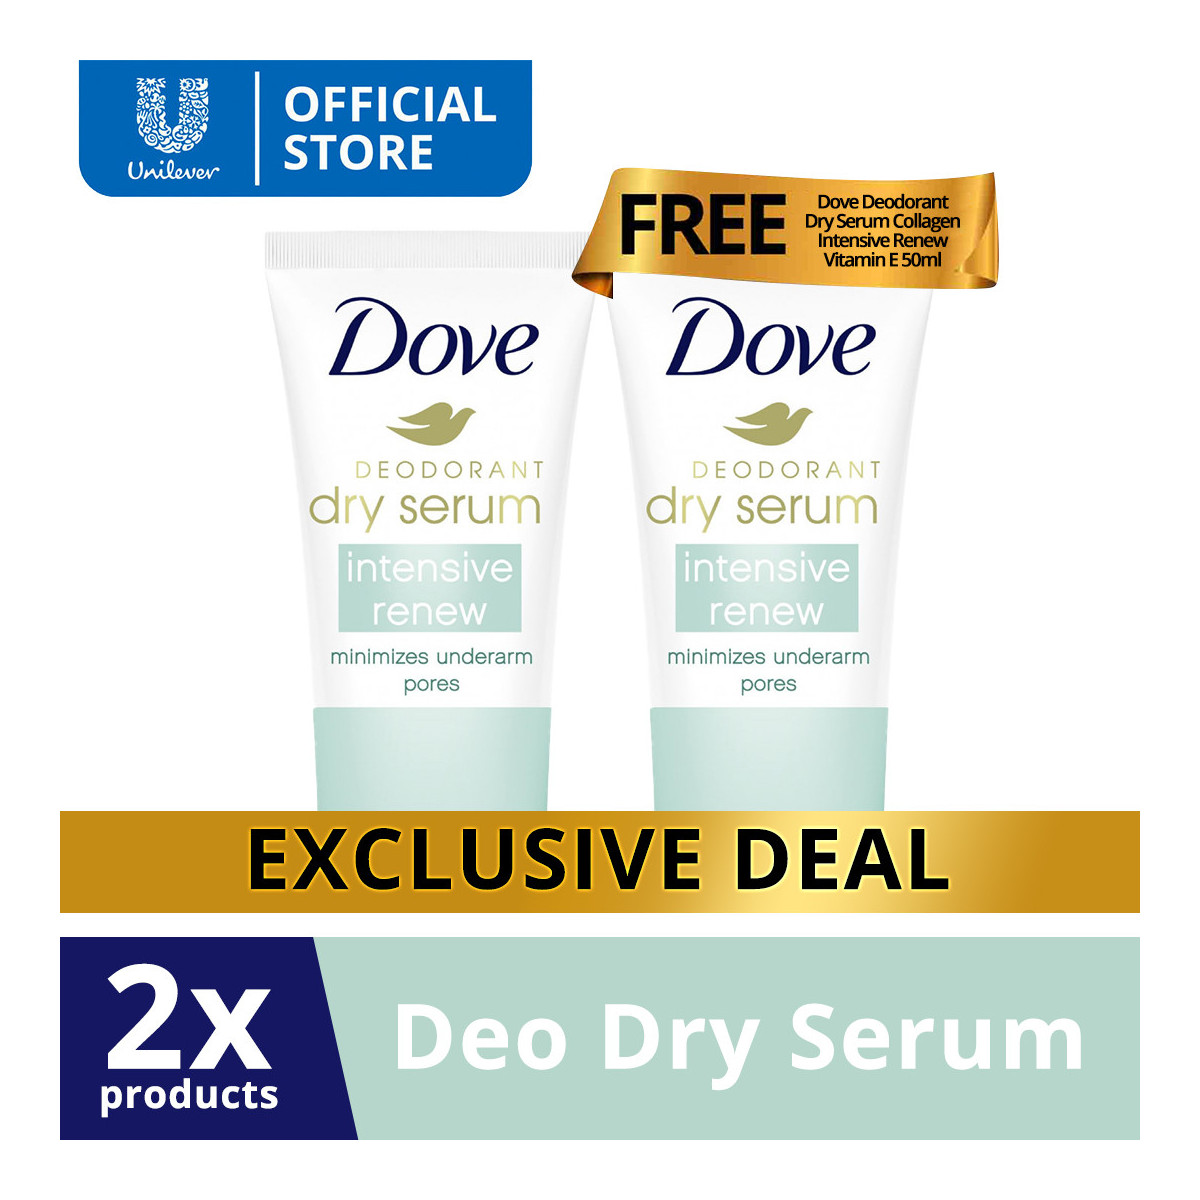 [BUY 1 TAKE 1] Dove Deodorant Dry Serum Collagen Intensive Renew Vitamin E 50ML